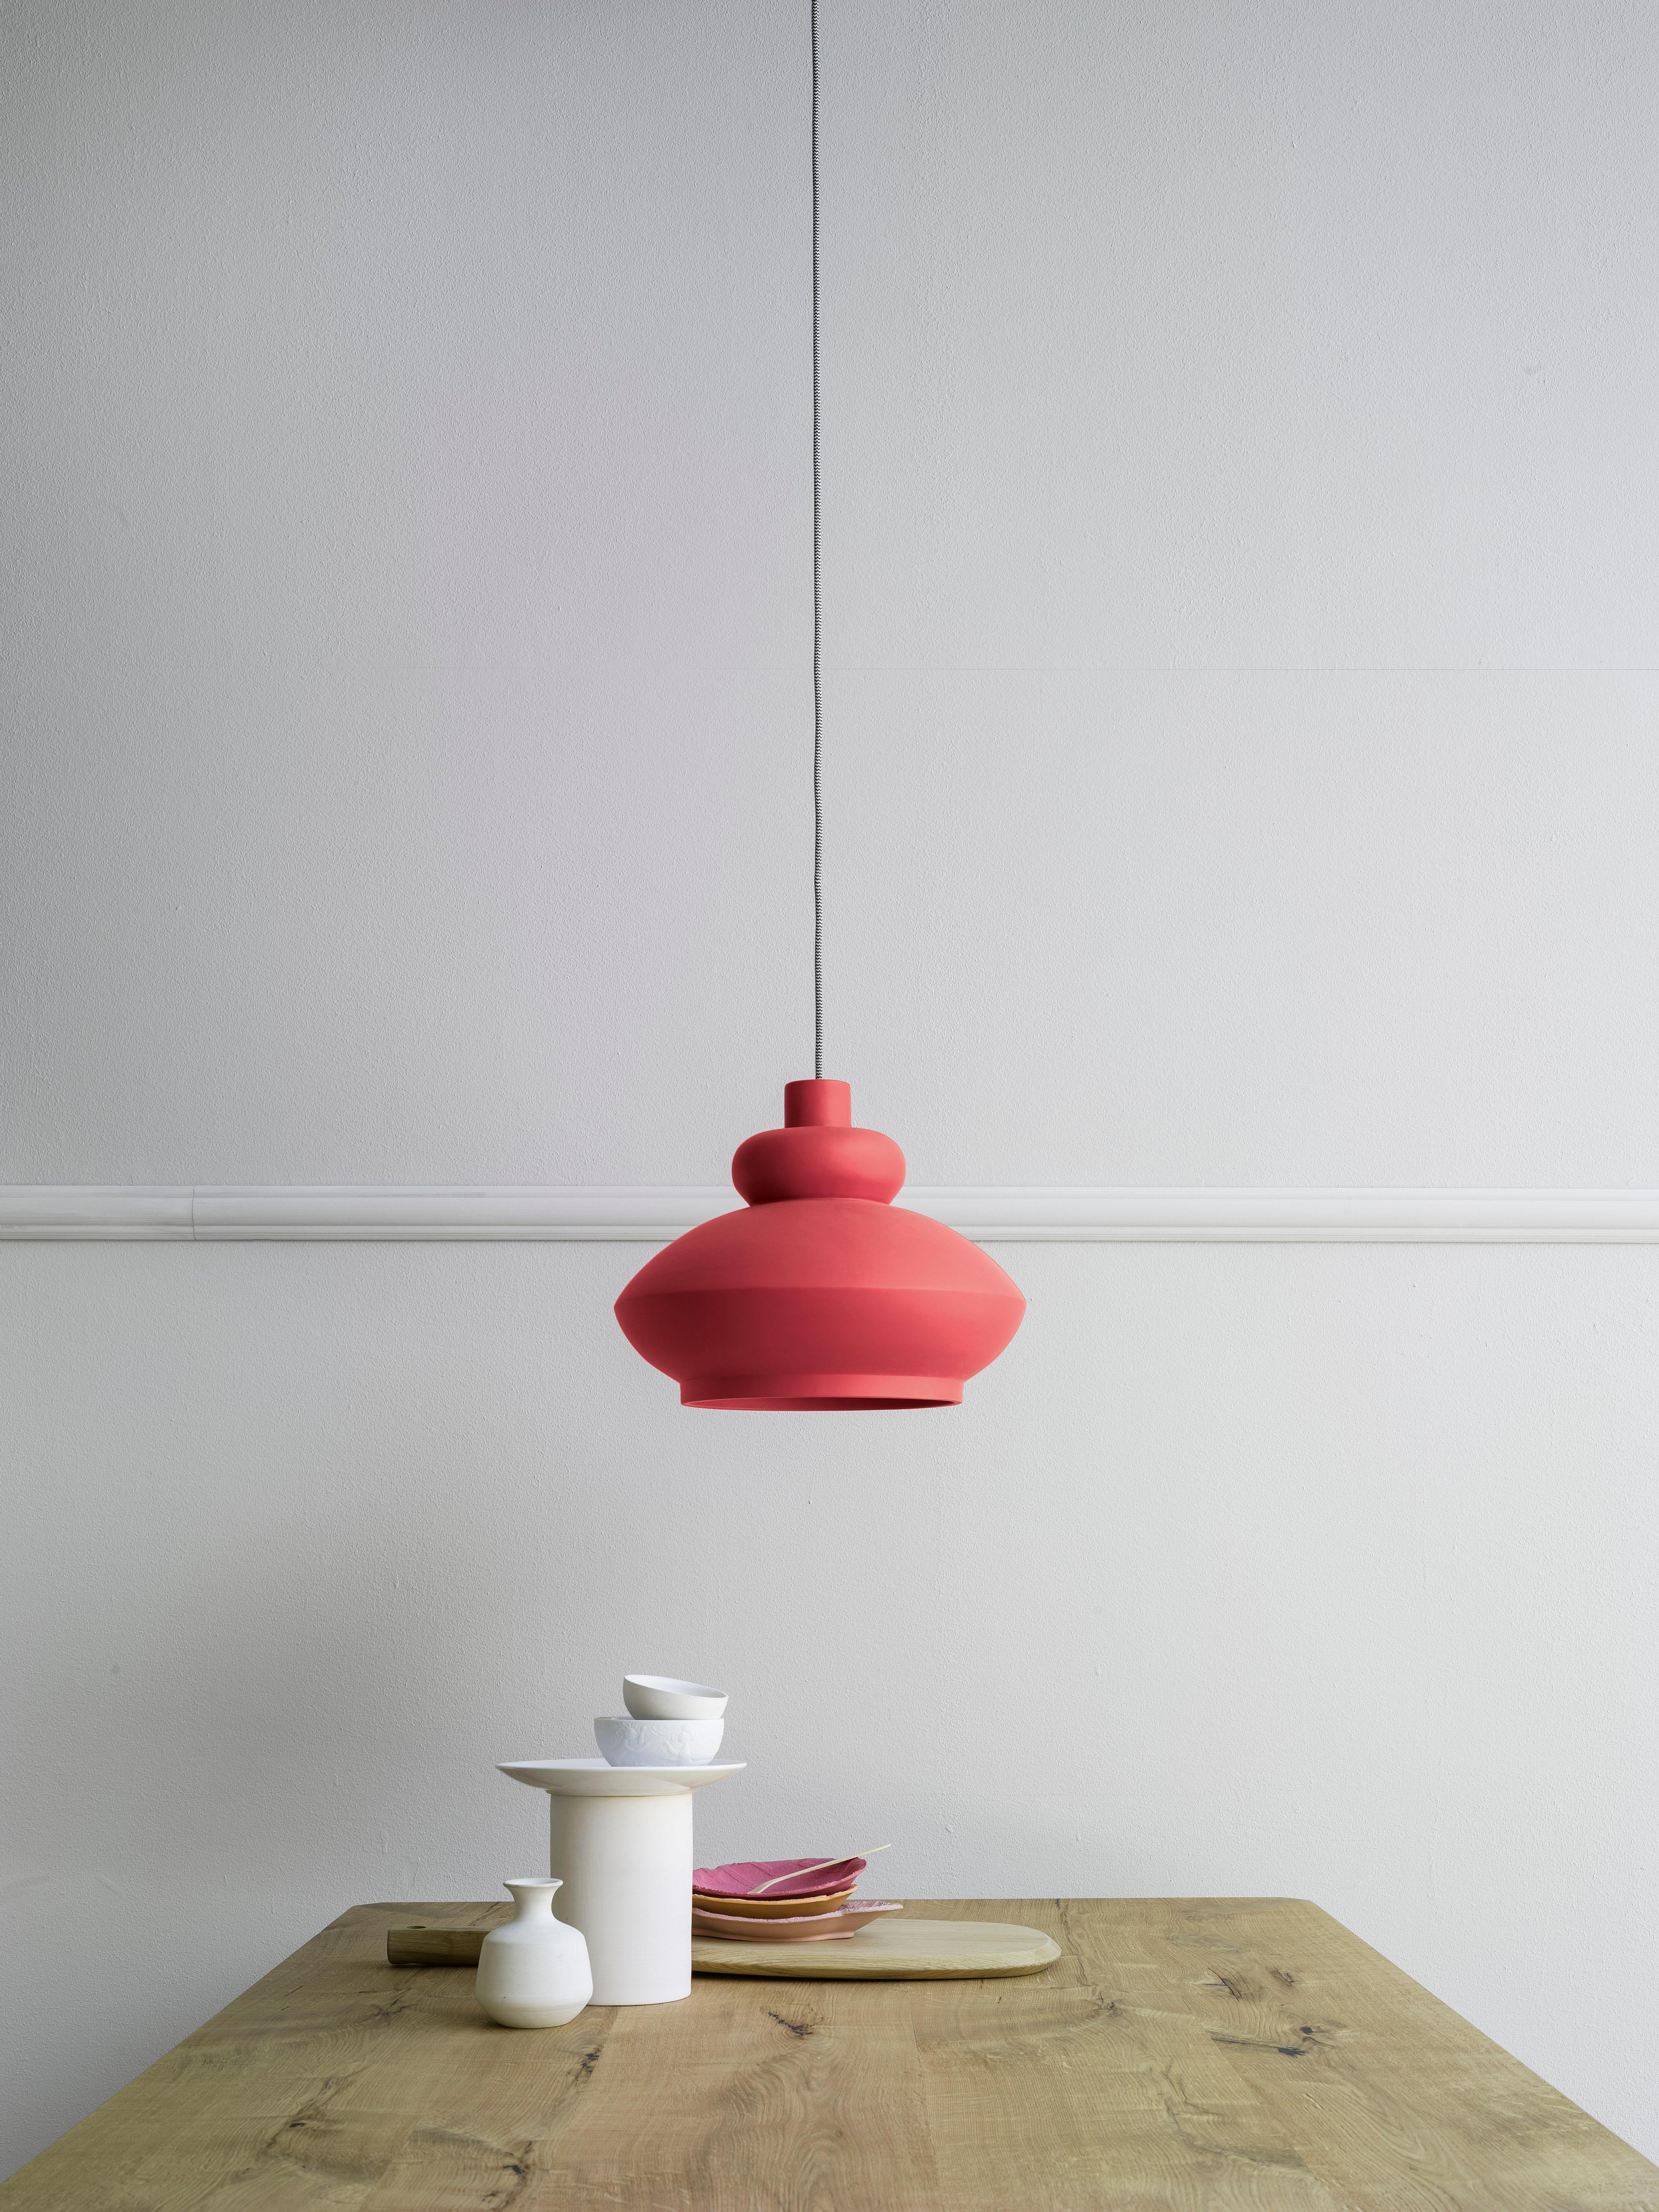 Tora, une lampe suspendue en céramique aux couleurs pastel mates, s'inspire des lanternes arabes et des anciennes lampes à huile. Conçu pour être utilisé individuellement ou en groupe, dans des environnements résidentiels ou contractuels. Vous voyez